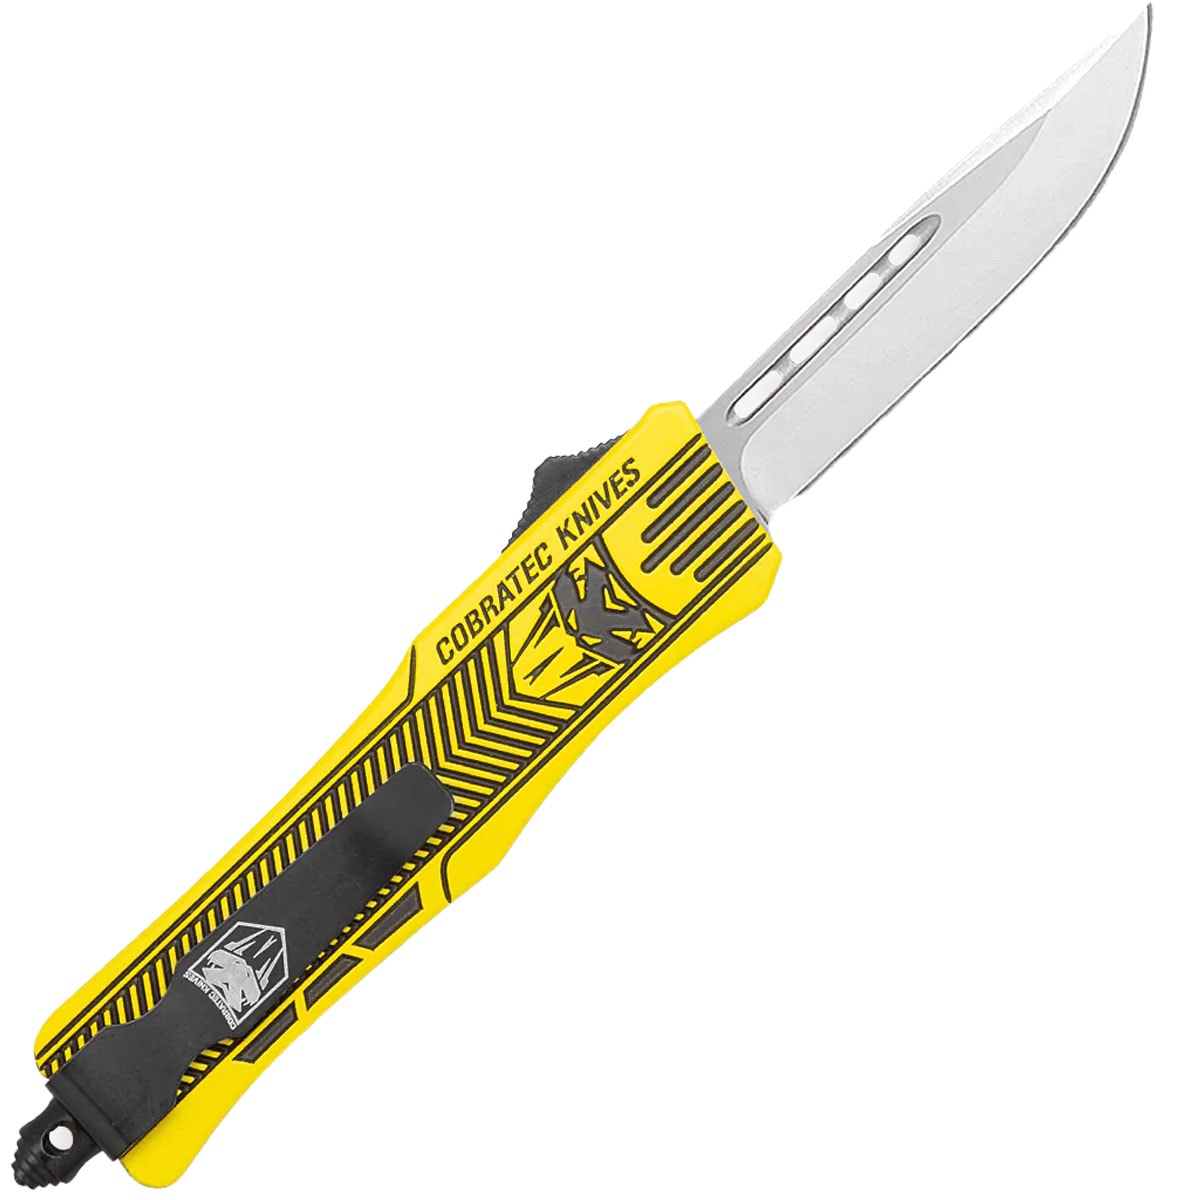 Nóż sprężynowy CobraTec OTF Medium Yellow and Graphite Black